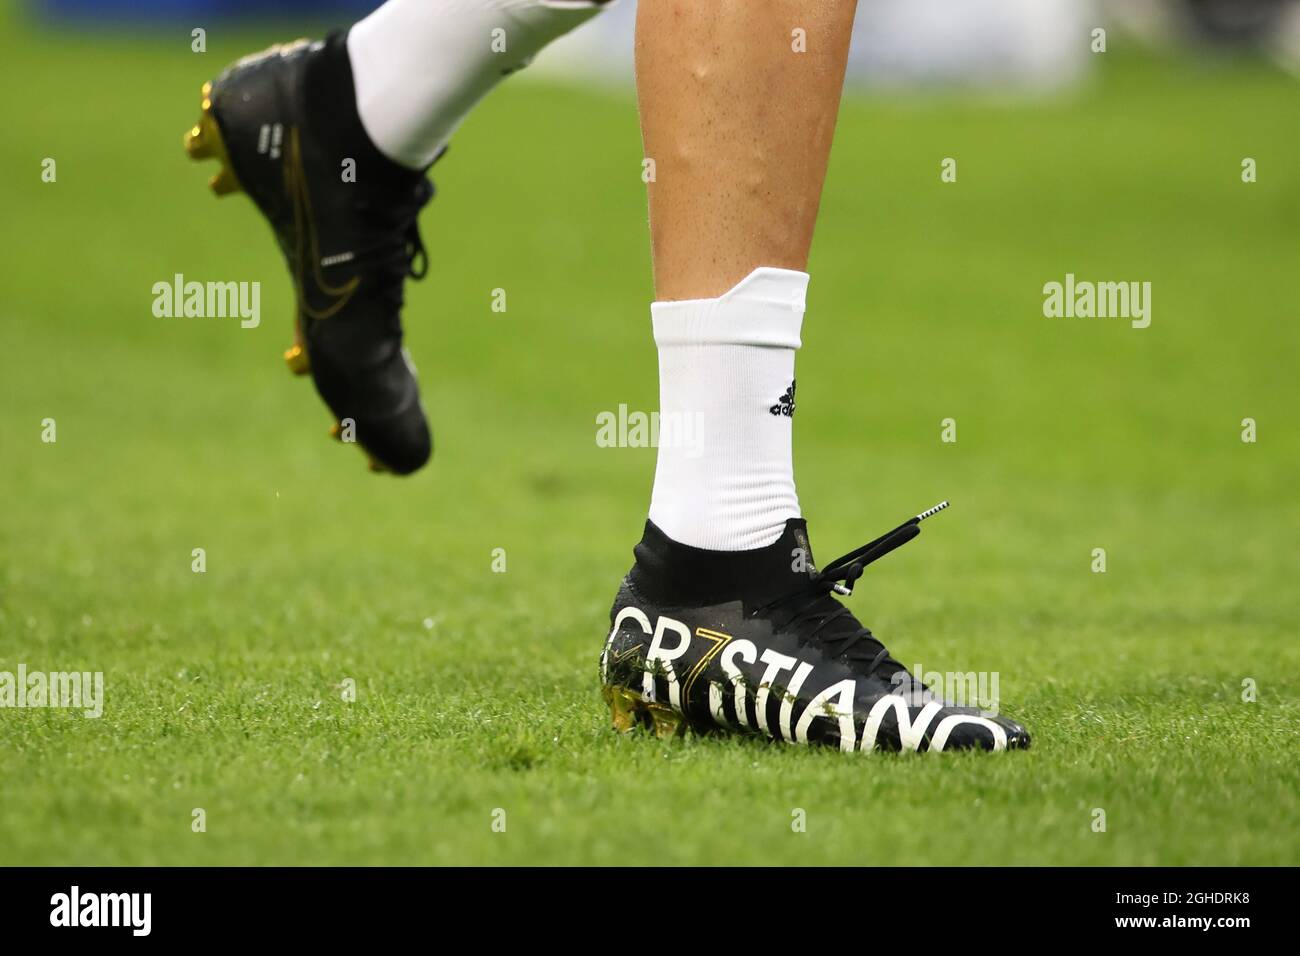 Cristiano Ronaldo delle nuove scarpe nike della Juventus durante la partita  della Serie A a a Giuseppe Meazza, Milano. Data foto: 27 aprile 2019. Il  credito d'immagine dovrebbe essere: Jonathan Moscrop/Sportimage via